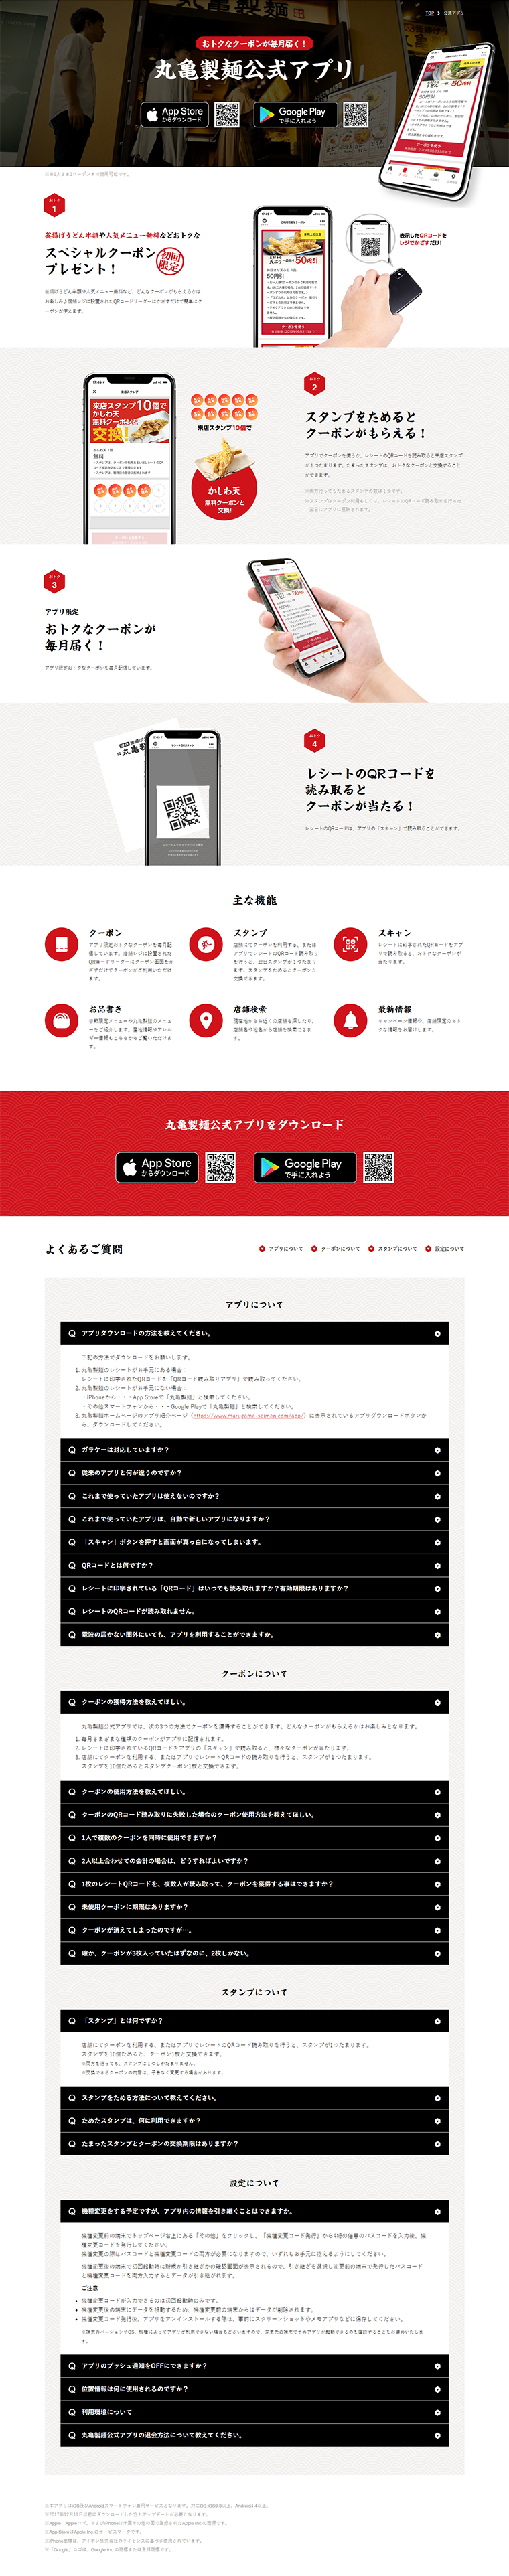 丸亀製麺公式アプリ_pc_1